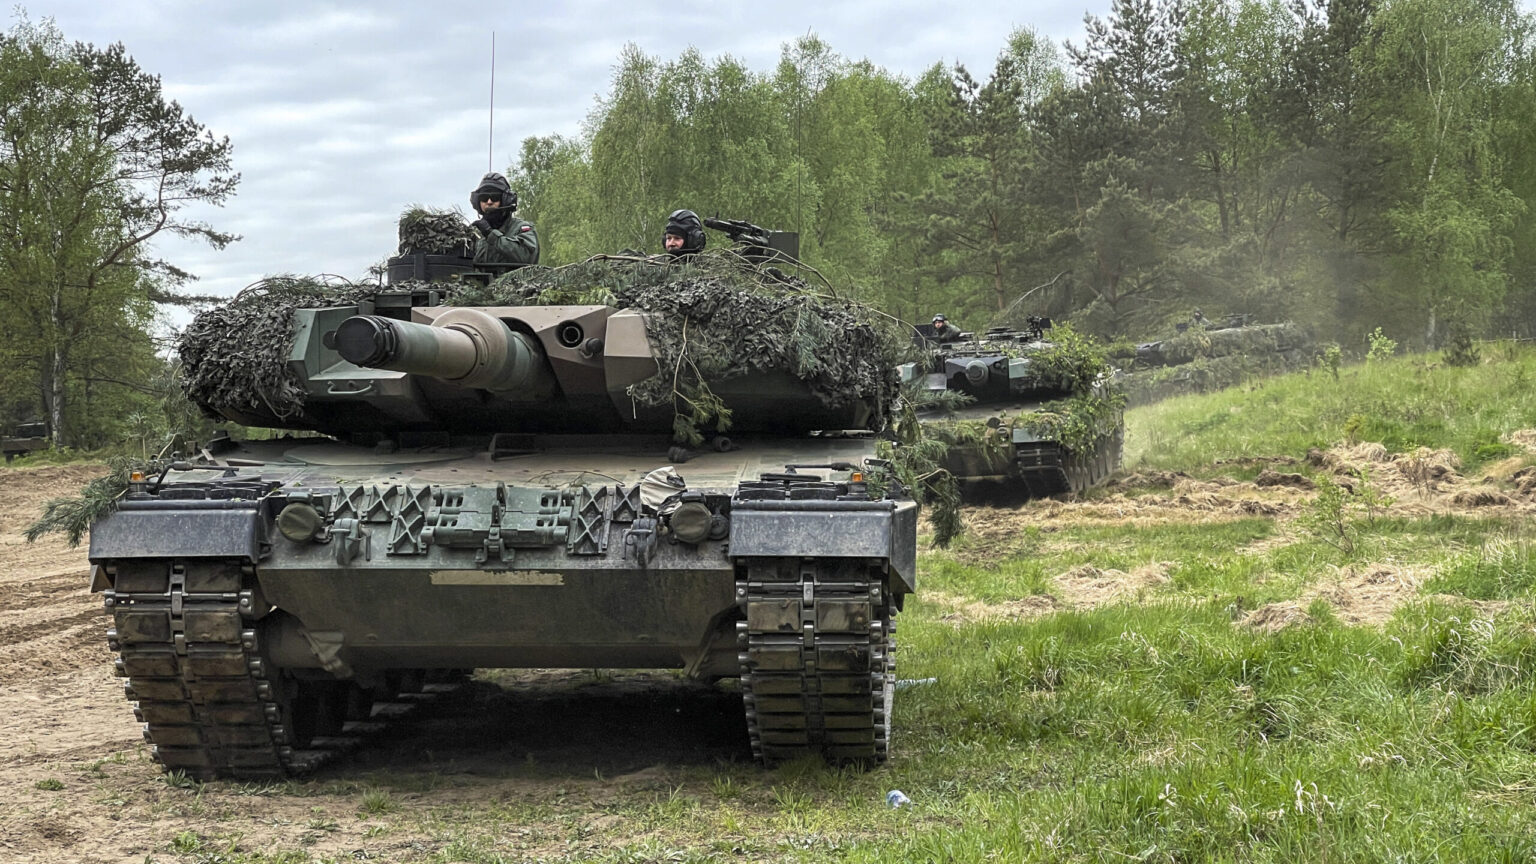 Φινλανδία: Θα αποστείλει στην Ουκρανία τρία άρματα μάχης Leopard 2 κατάλληλα για άρση ναρκοπεδίων